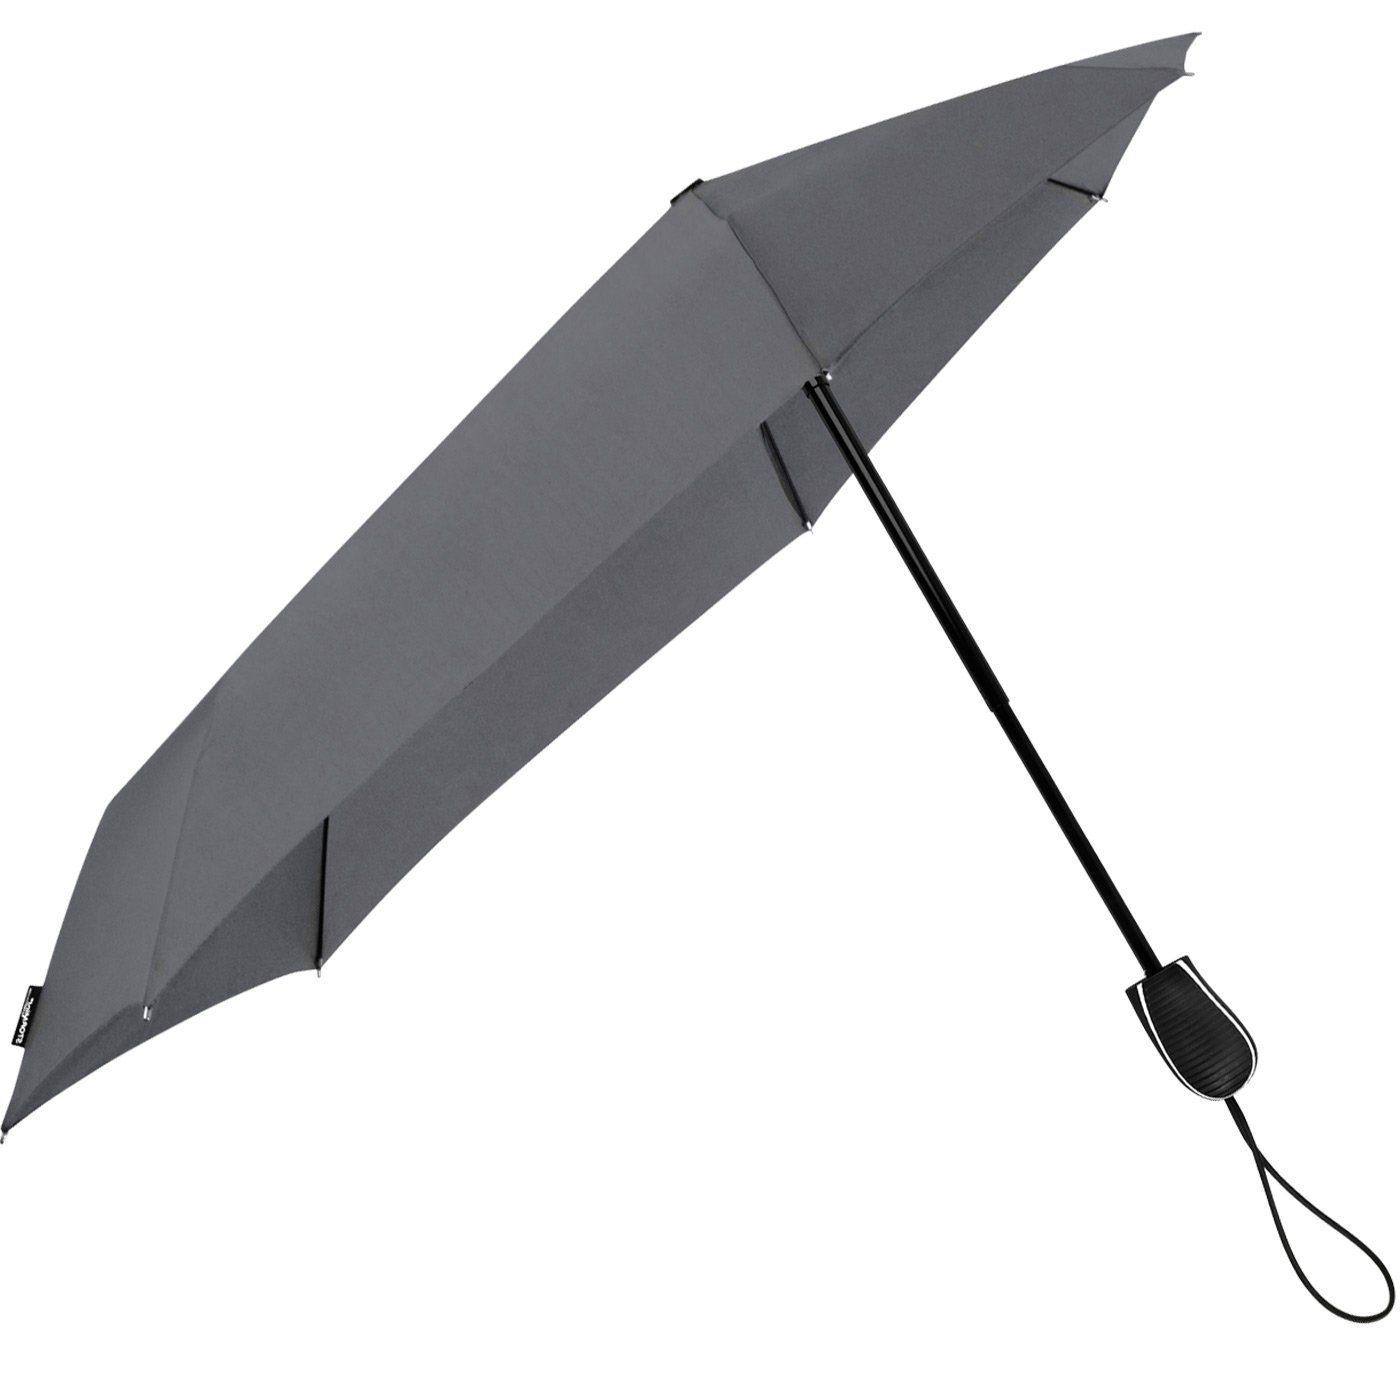 sich Wind, in zu Sturmschirm, km/h durch der Schirm Taschenregenschirm Impliva den bis grau seine hält aus STORMini besondere Form dreht 80 aerodynamischer